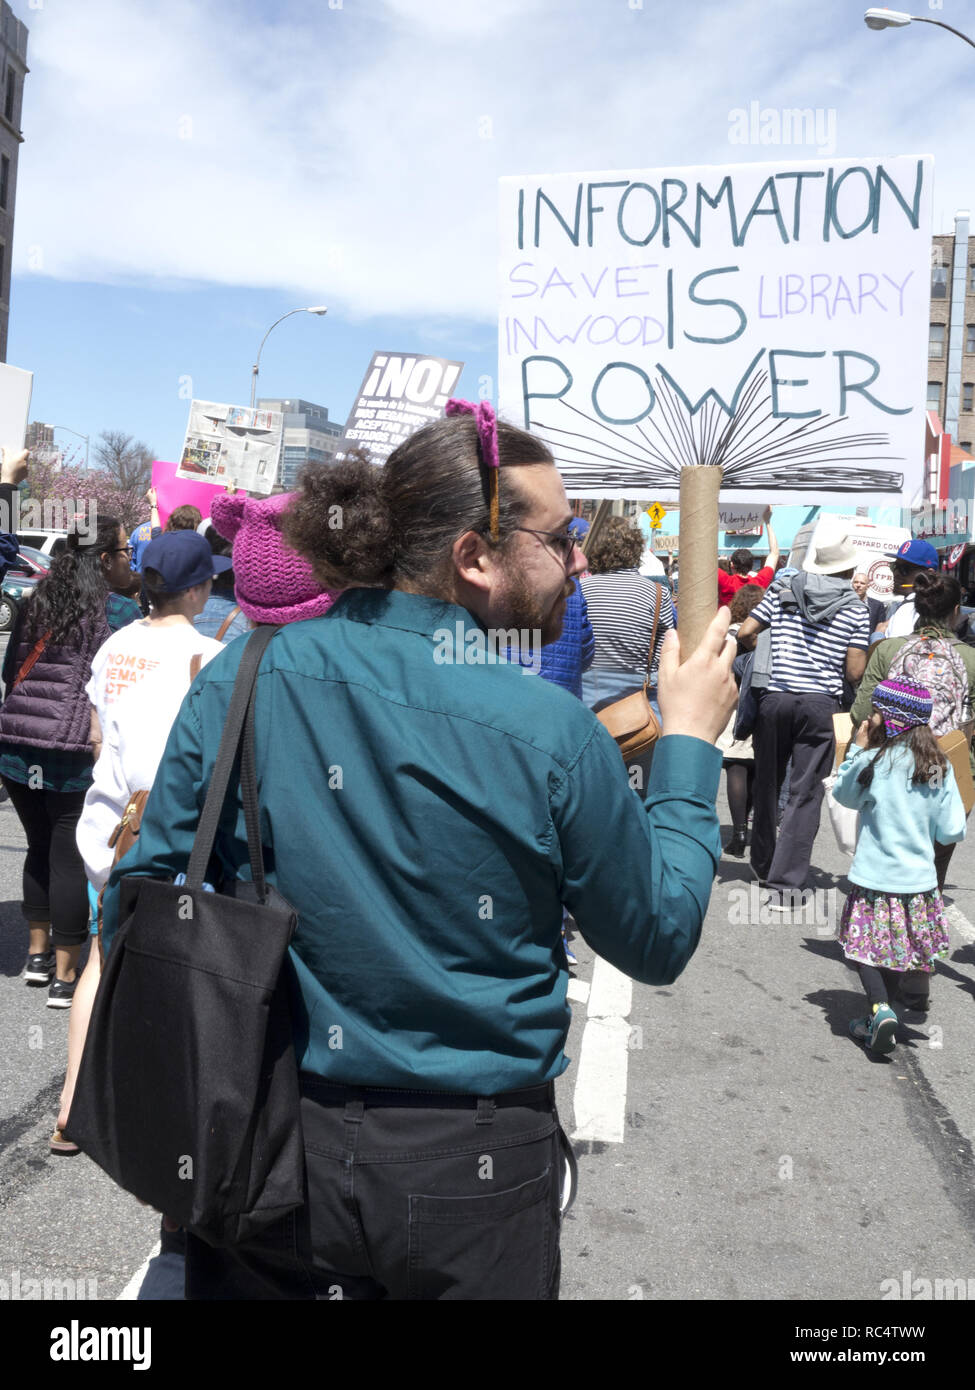 Cientos de manifestantes se reunieron en Harlem para el rallye y en marzo en el Uptown de marzo para Inmigrantes, 2017. El hombre posee 'Save Inwood bibliotecas" signo. Foto de stock